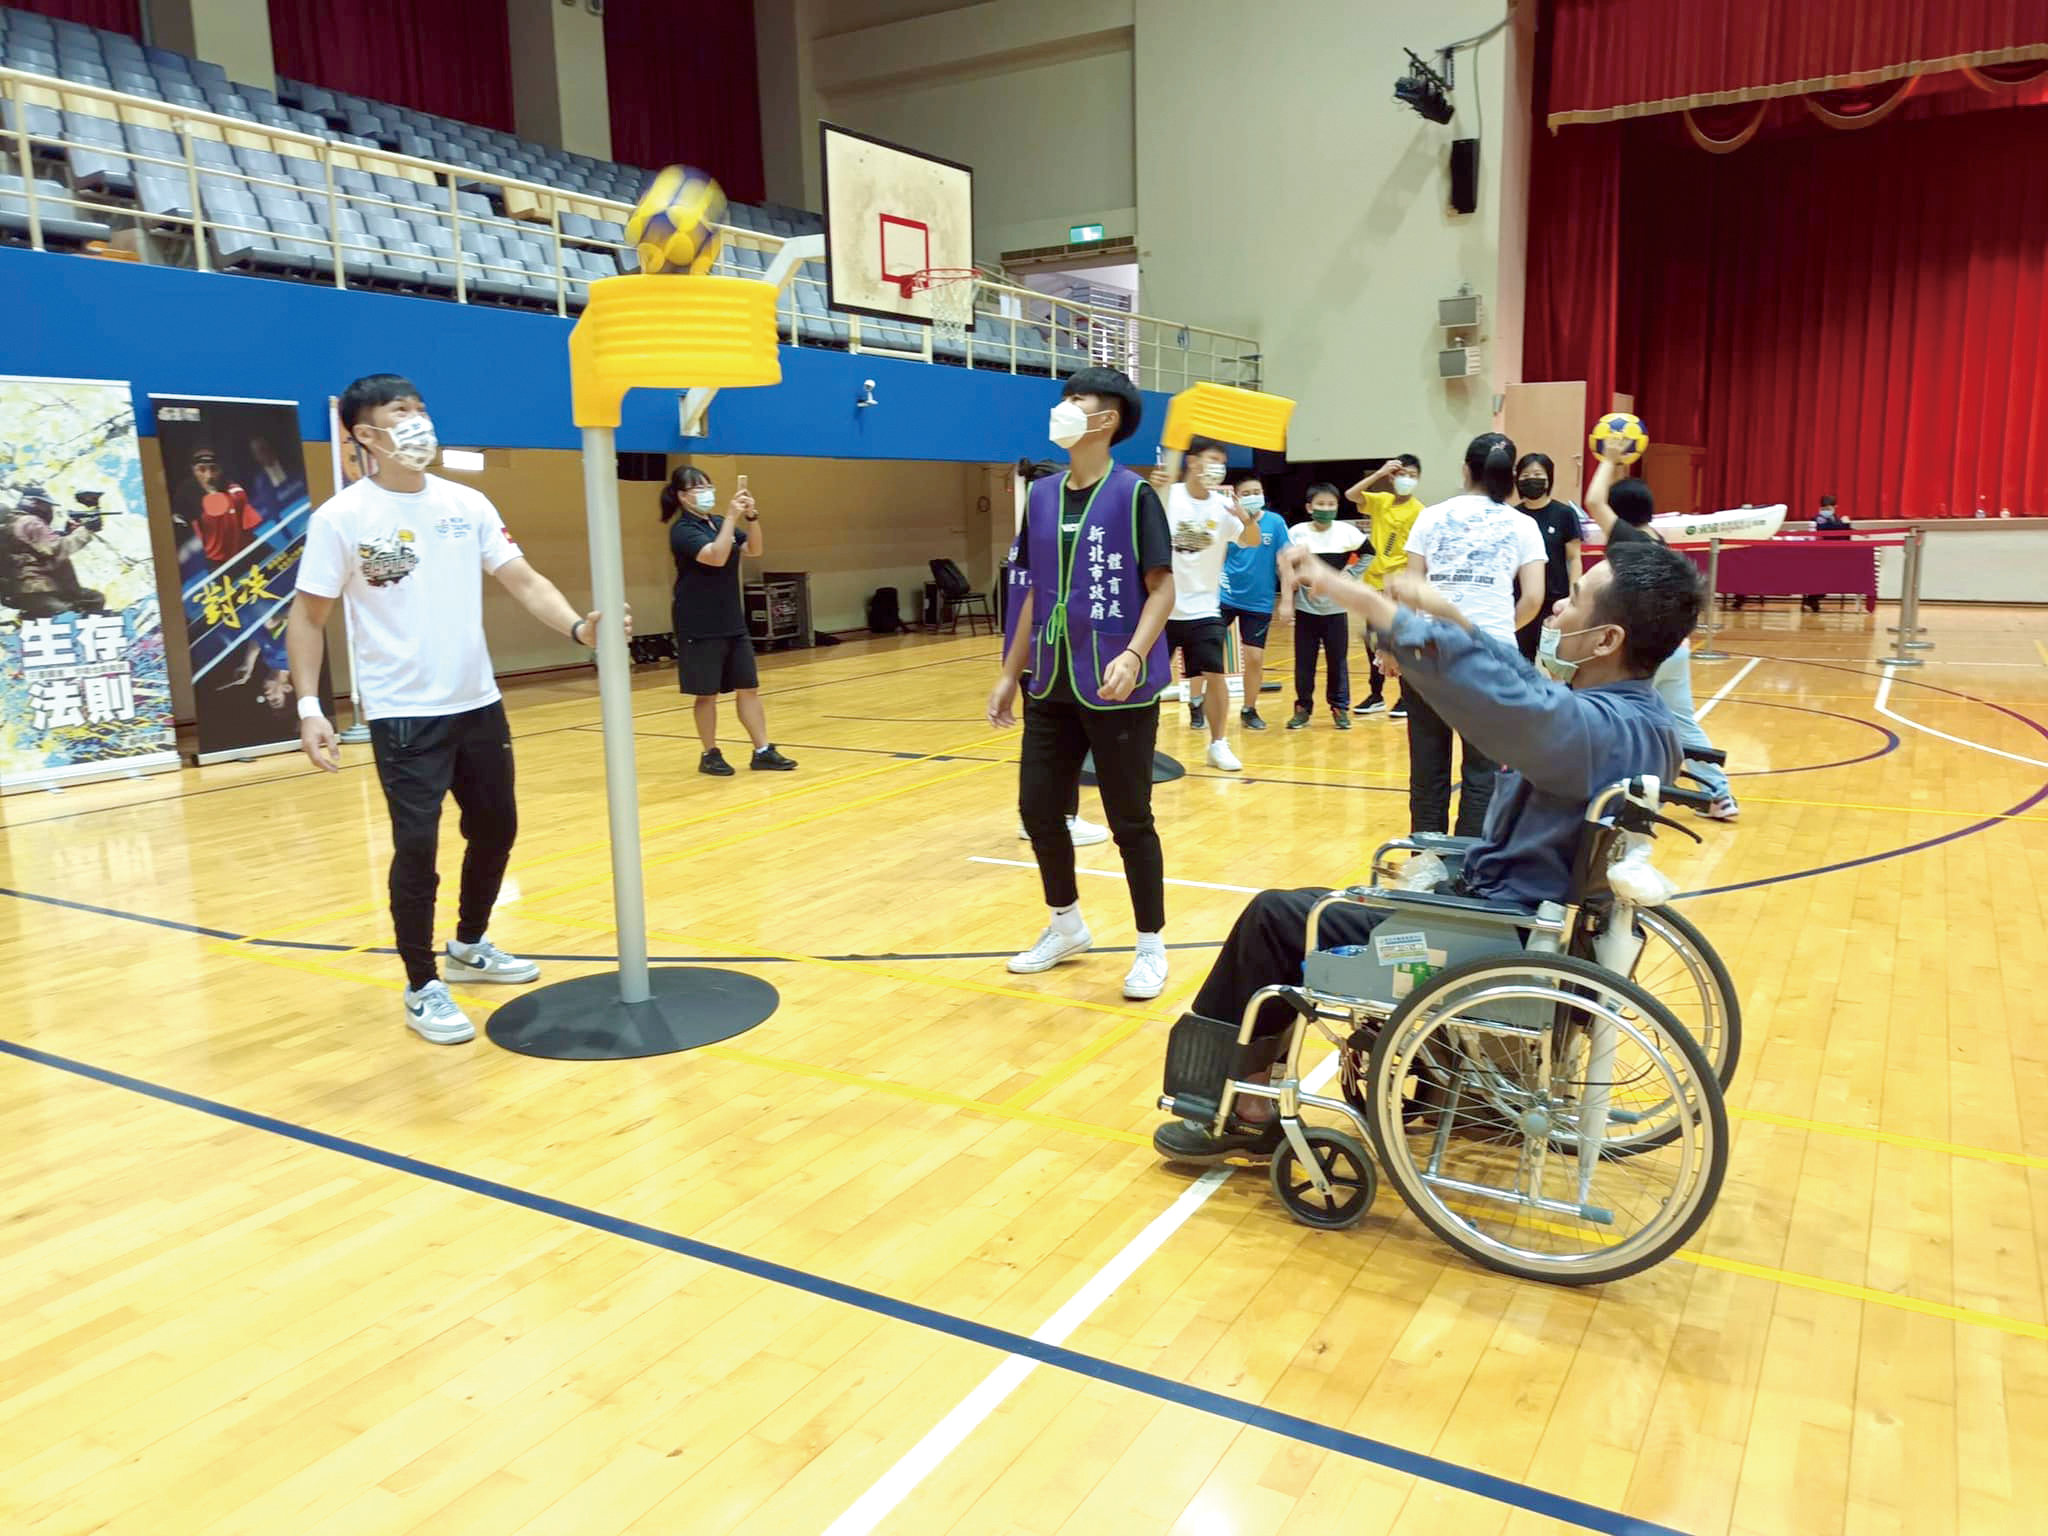 連續六年舉辦「永達盃共融運動會」，舉行十項適合銀髮族及身障者從事的運動項目。